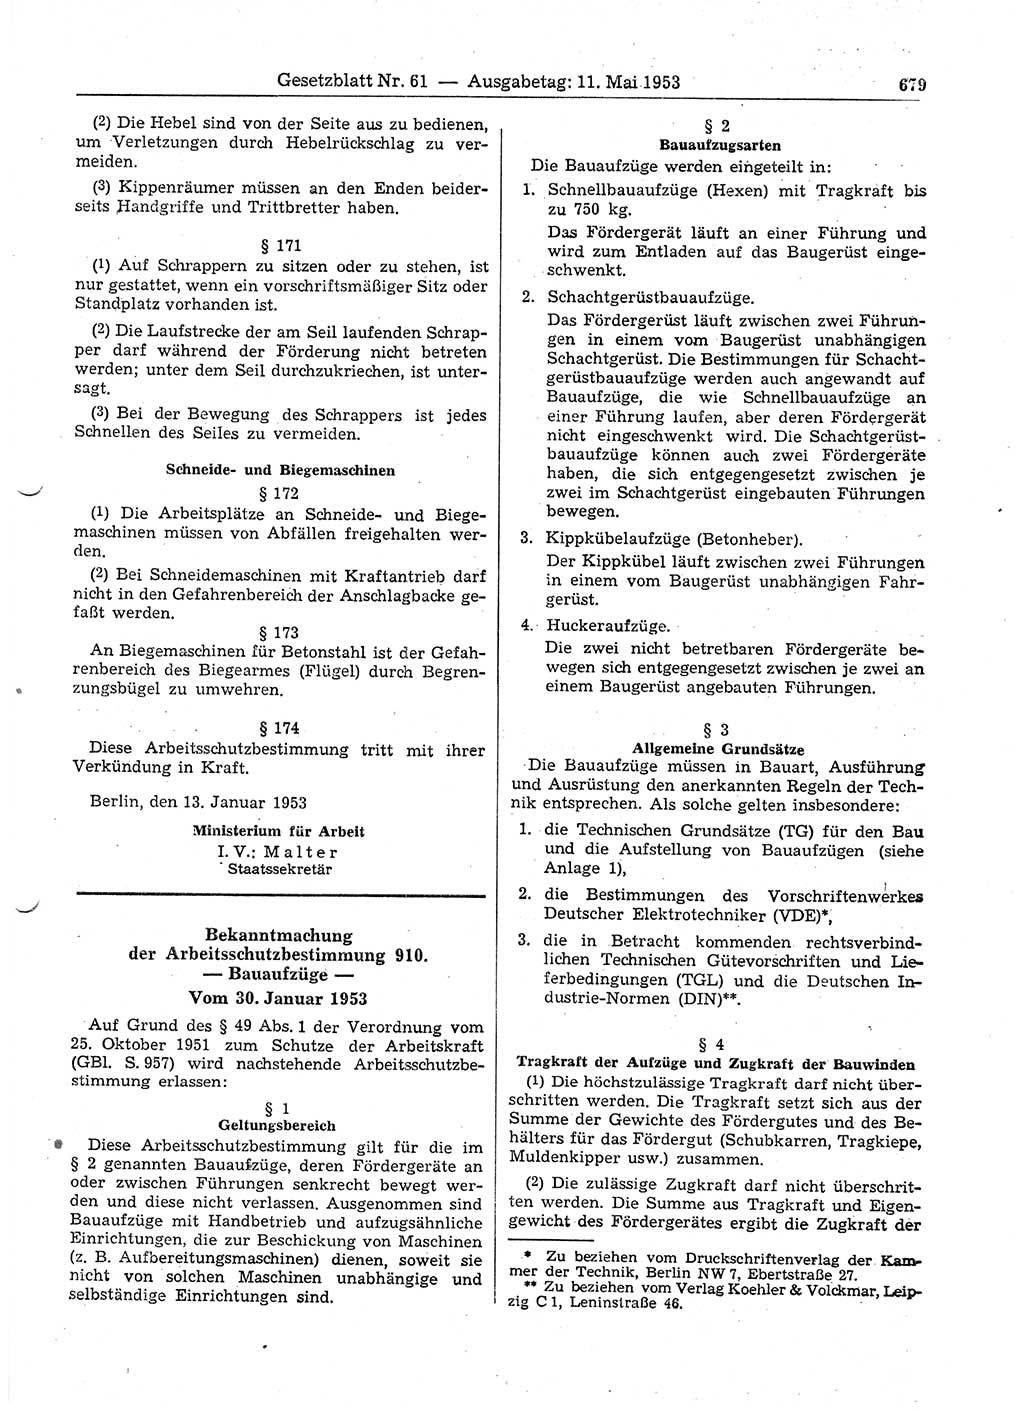 Gesetzblatt (GBl.) der Deutschen Demokratischen Republik (DDR) 1953, Seite 679 (GBl. DDR 1953, S. 679)